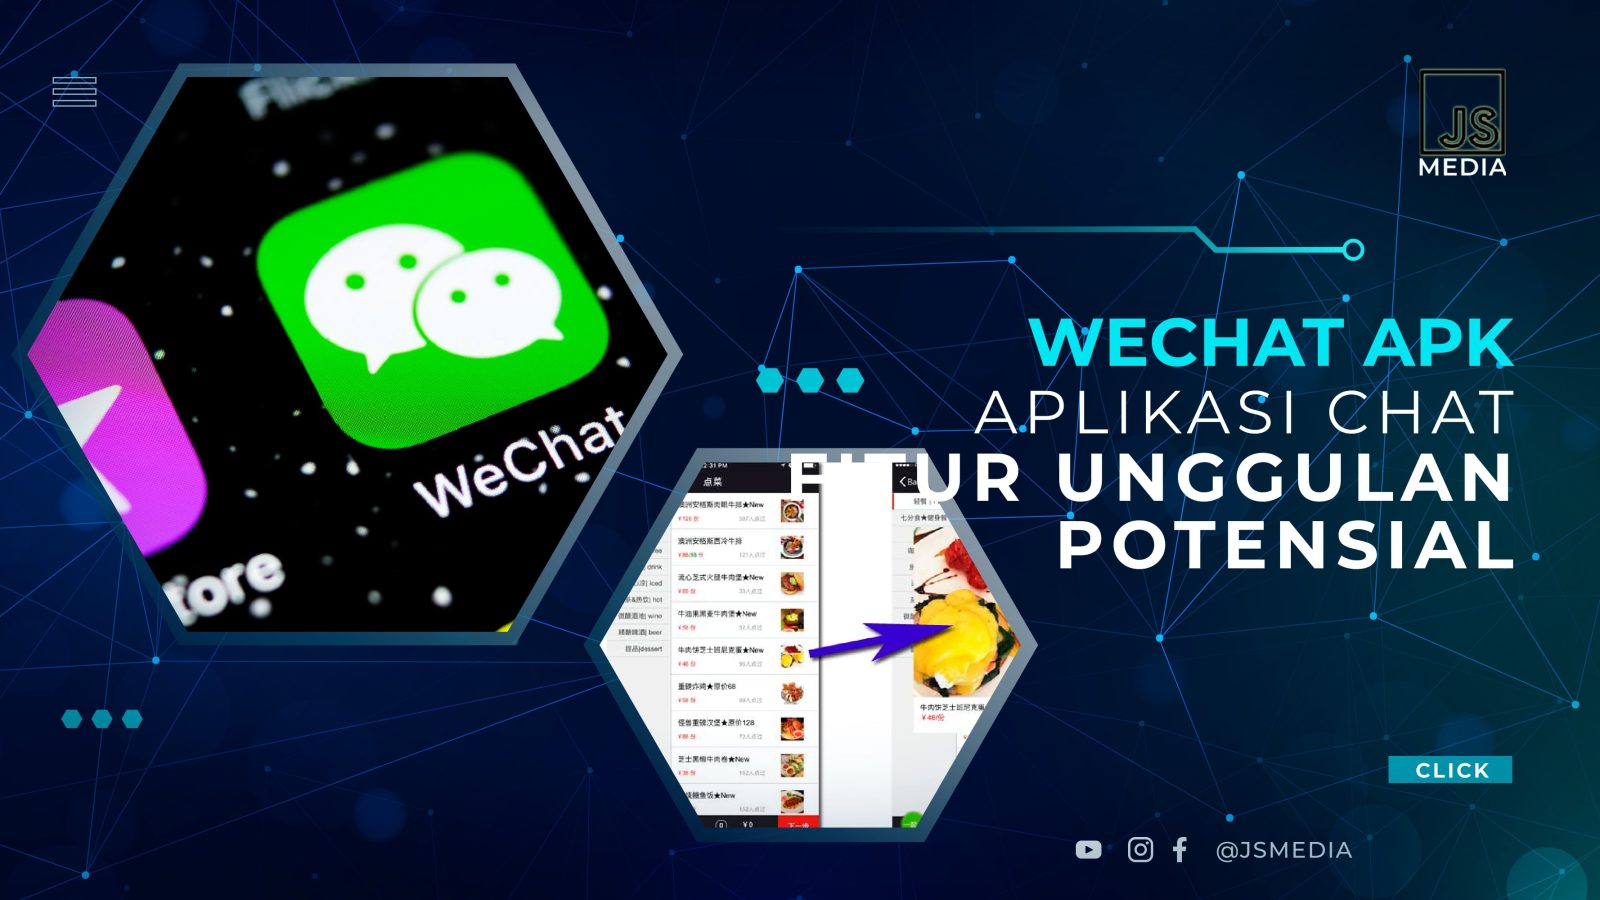 Download WeChat APK, Aplikasi Chat dengan Fitur Unggulan yang Potensial  